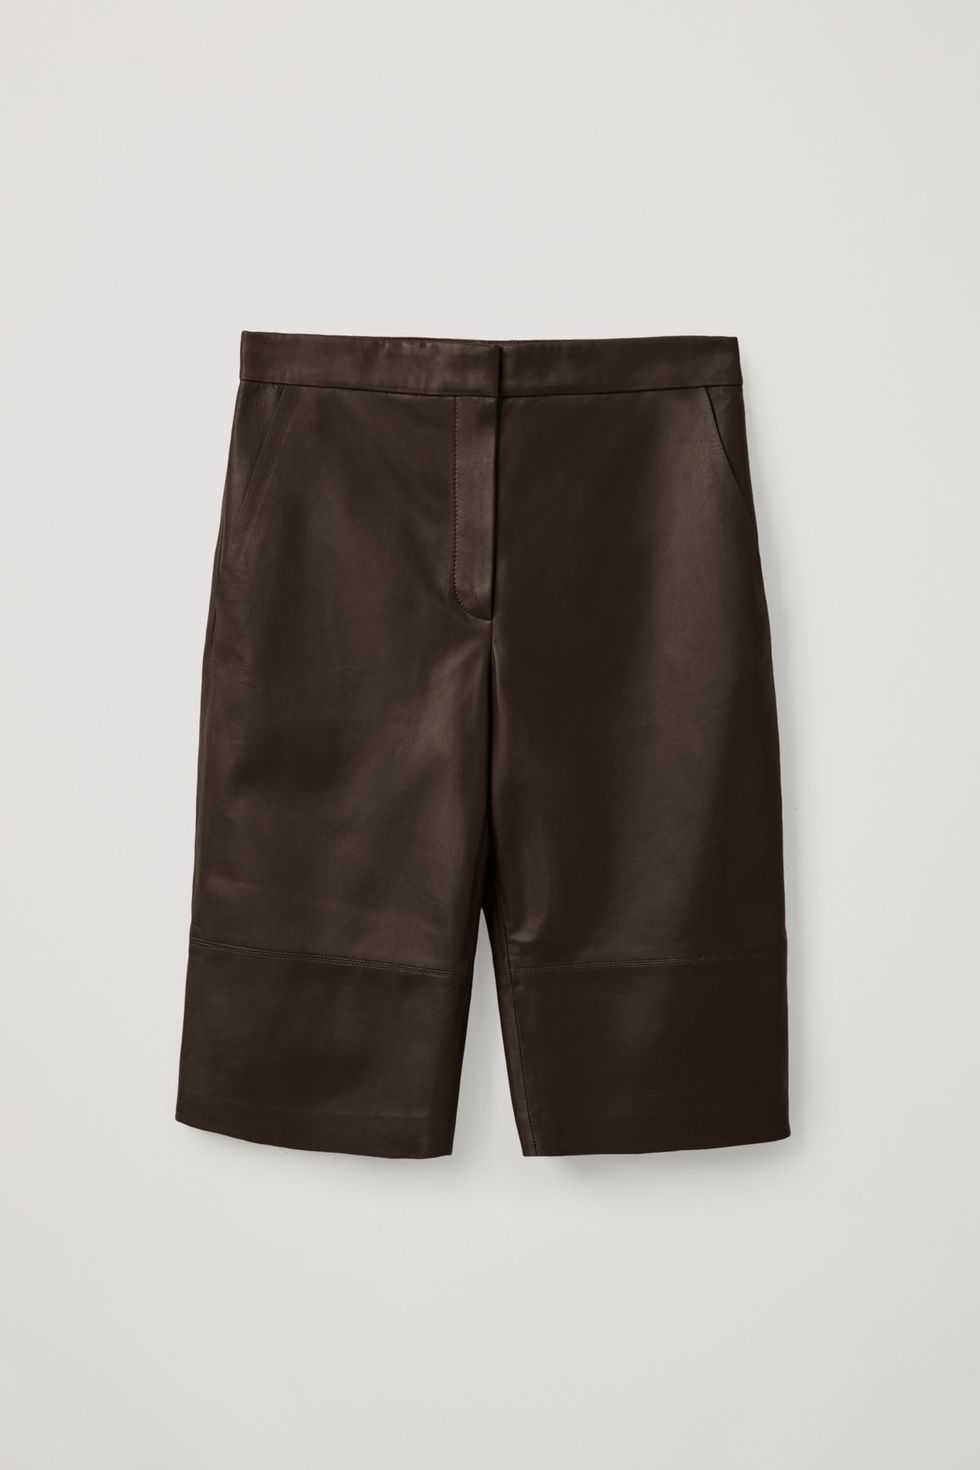 leather shorts - long leather shorts